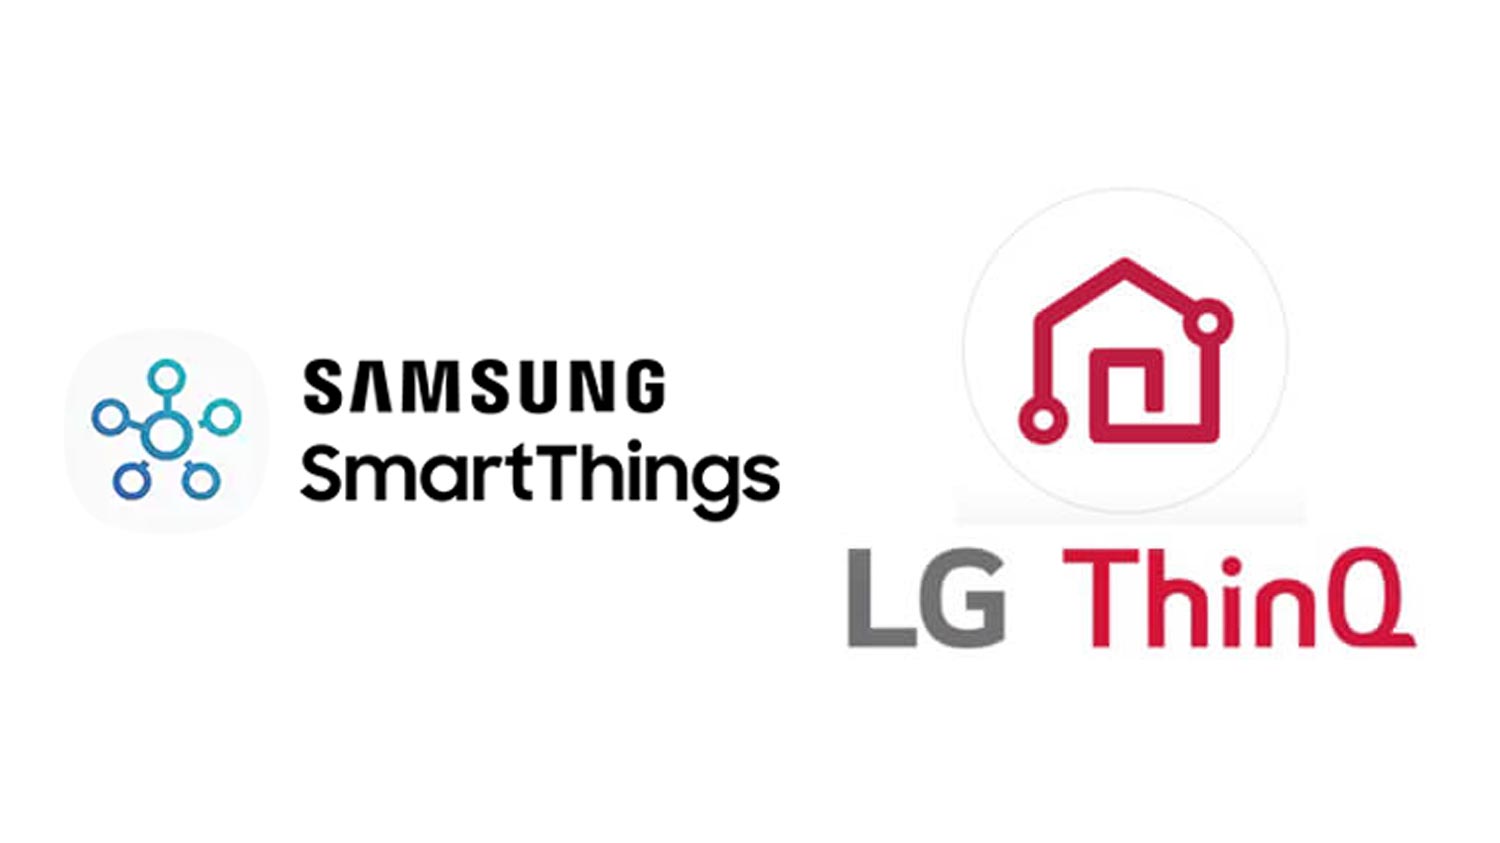 Samsung Dan LG Bersetuju Menyokong Peranti Internet Benda Keluaran Masing-Masing